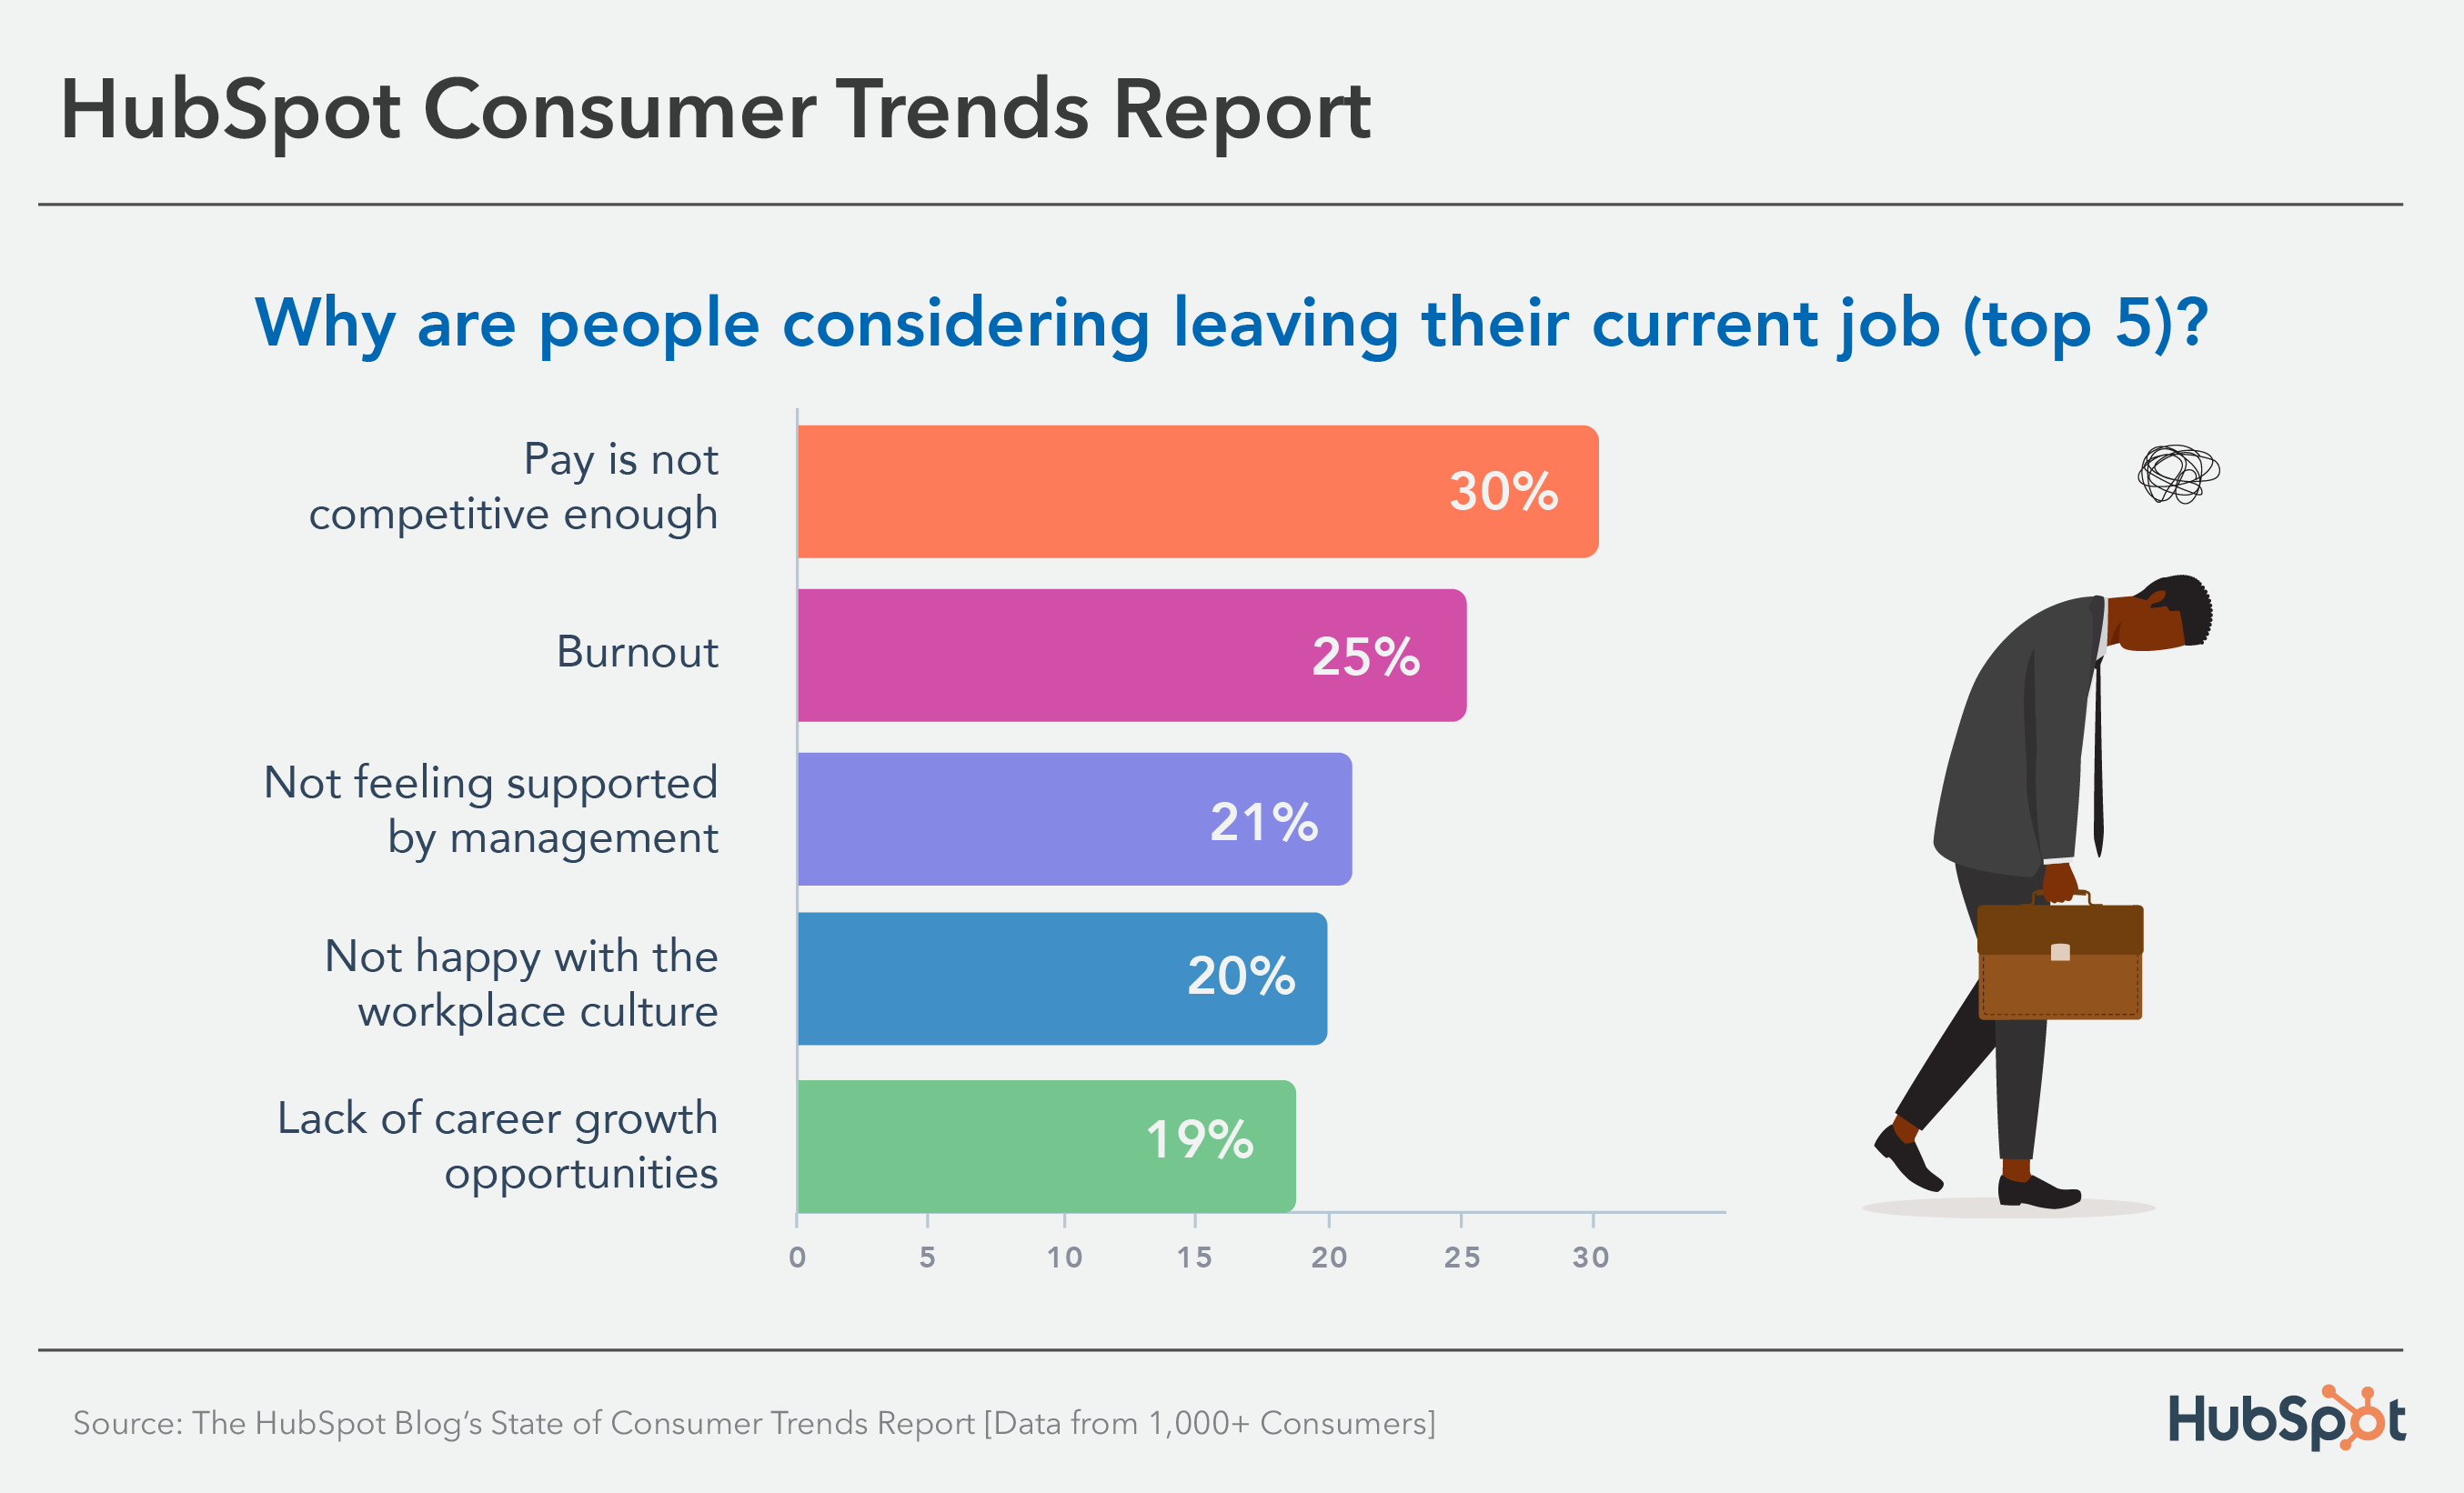 I 5 principali motivi per cui i consumatori stanno pensando di lasciare il lavoro